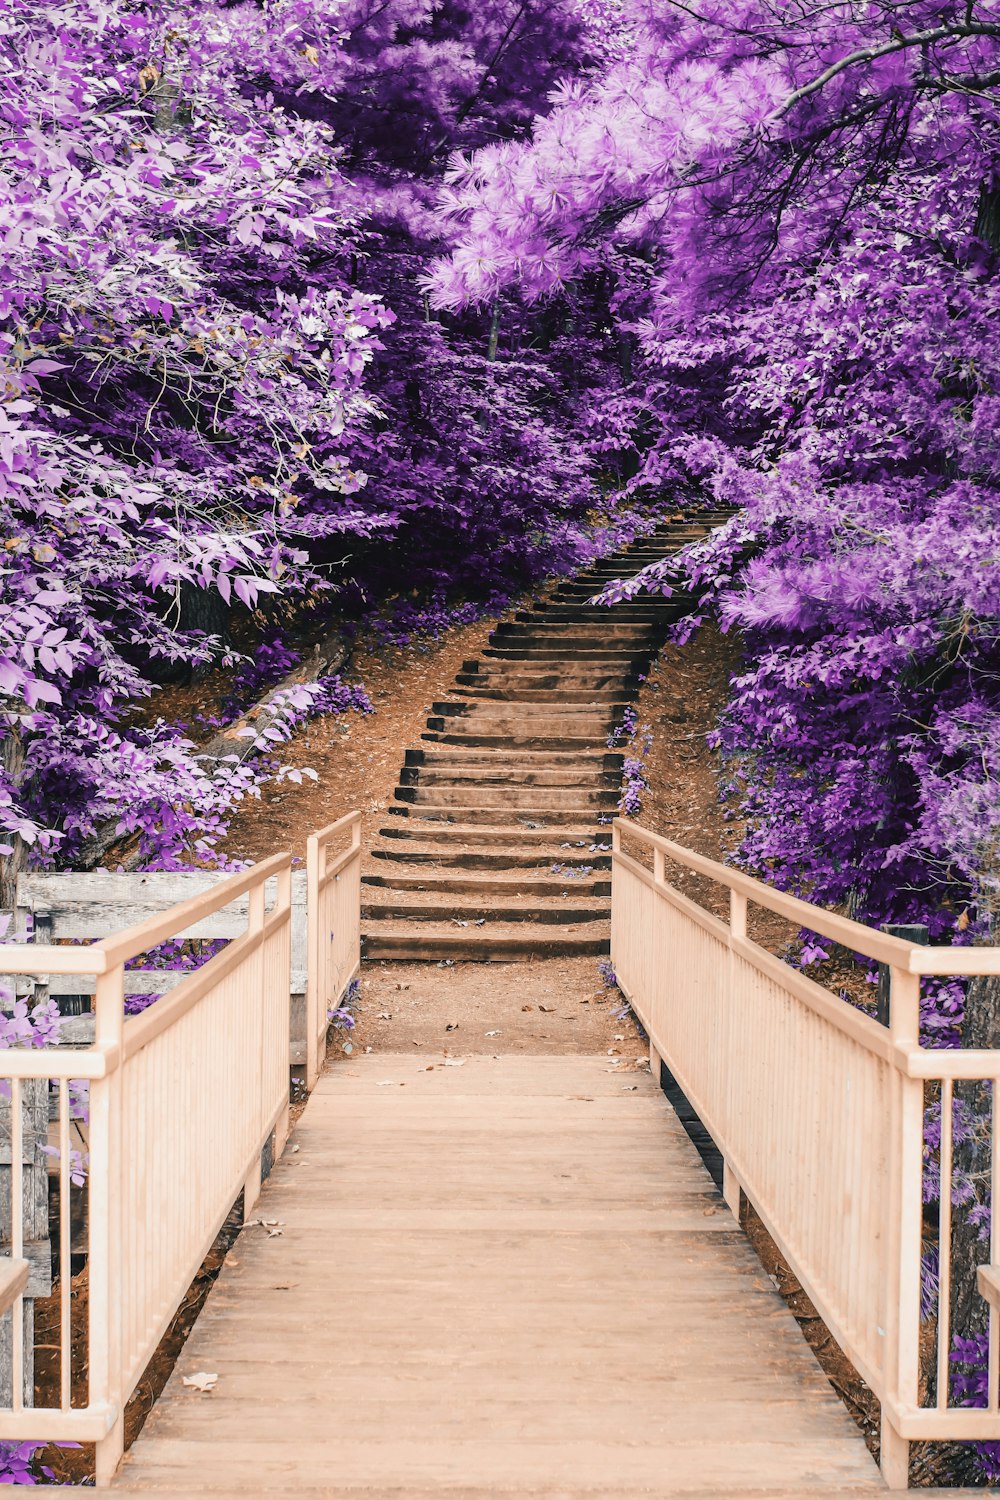 ponte de madeira e escada entre árvores roxas